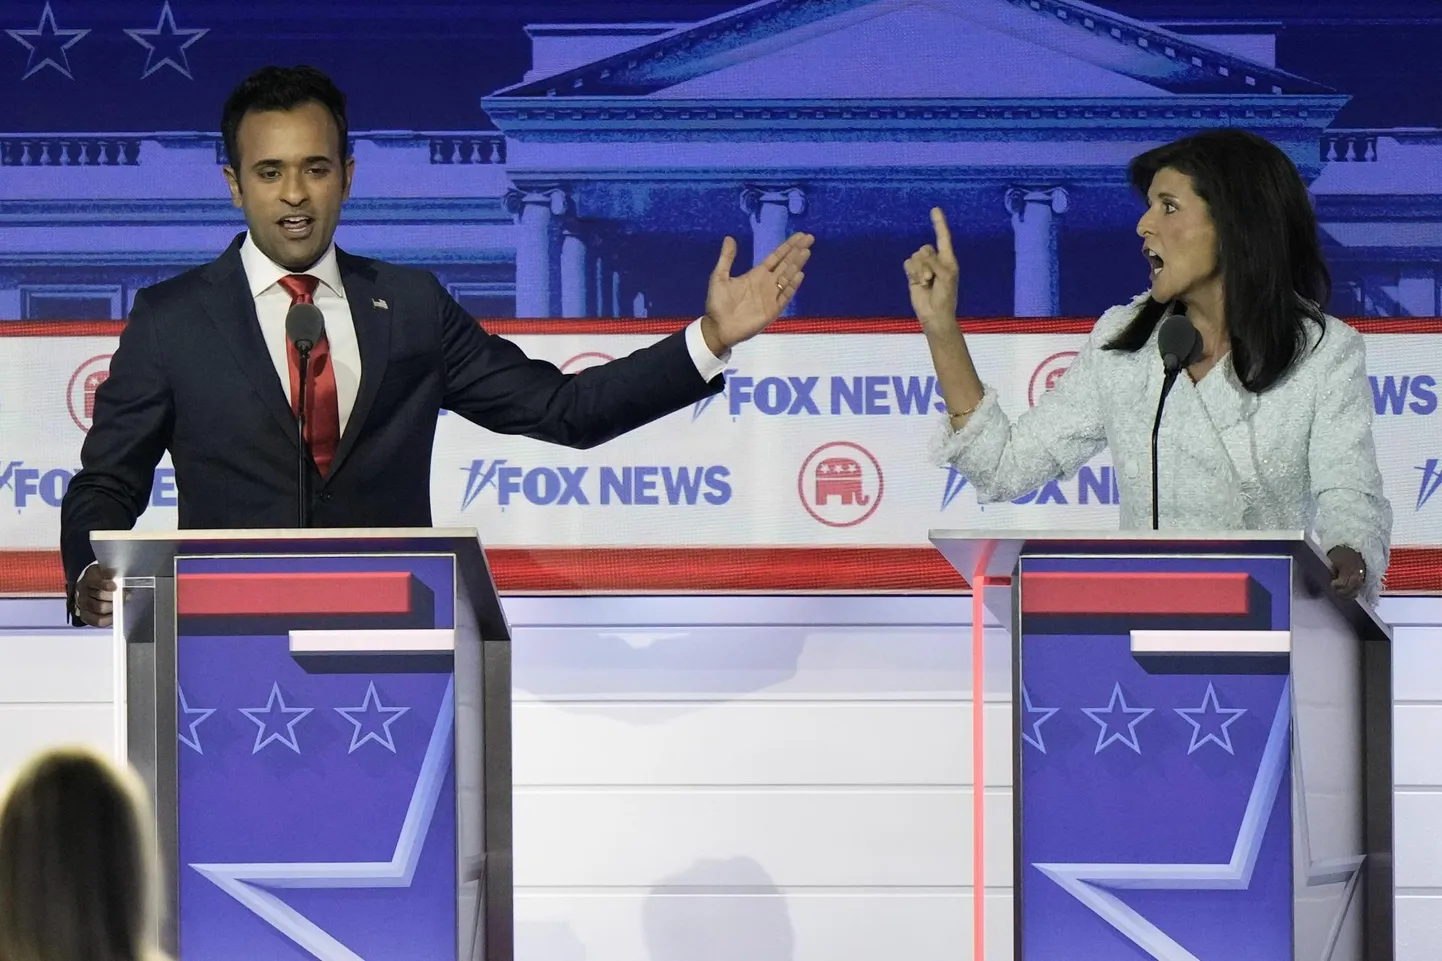 Vivek Ramaswamy ja Nikki Haley tulises väitluses Vabariikliku Partei esimeses presidendidebatis. 